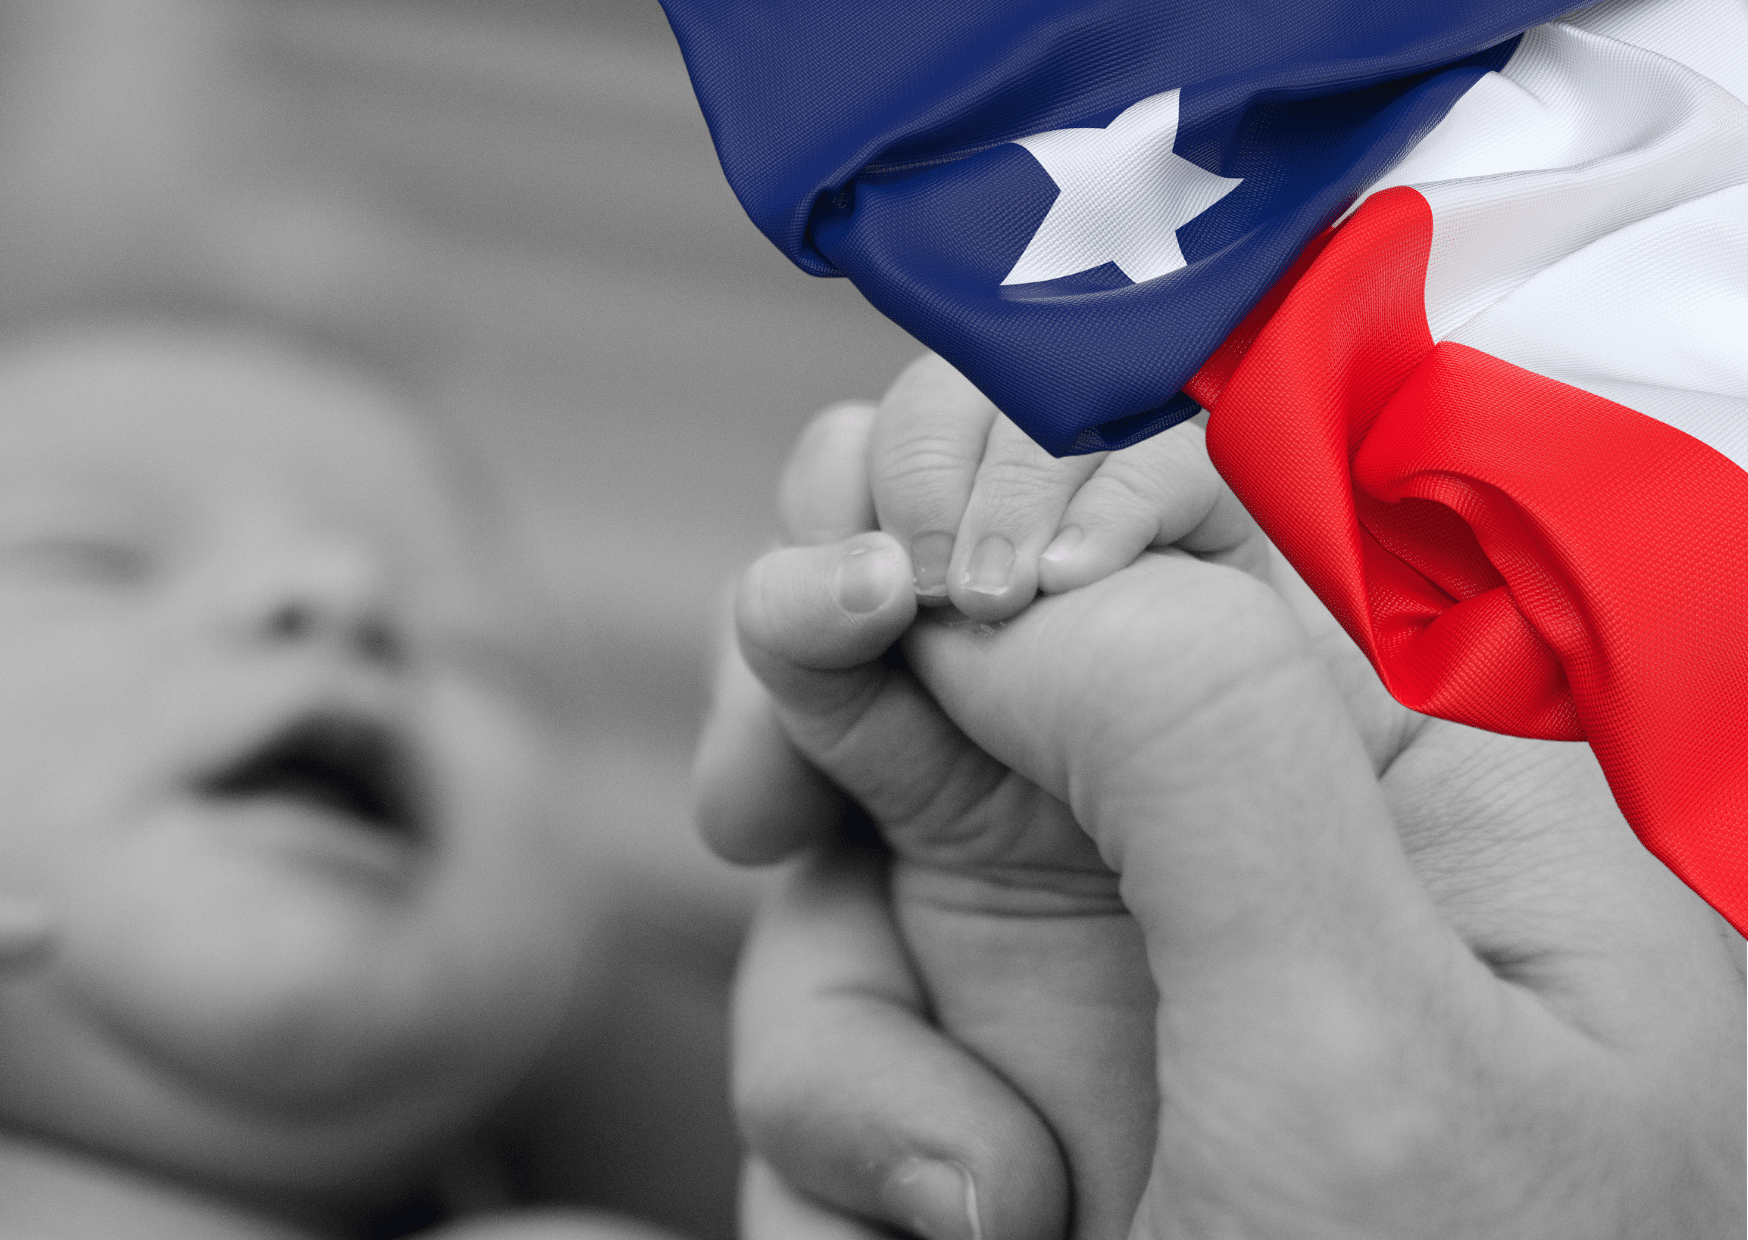 les restrictions d’accès à l’ivg mises en œuvre au texas ont-elles causé une augmentation de la mortalité infantile ?